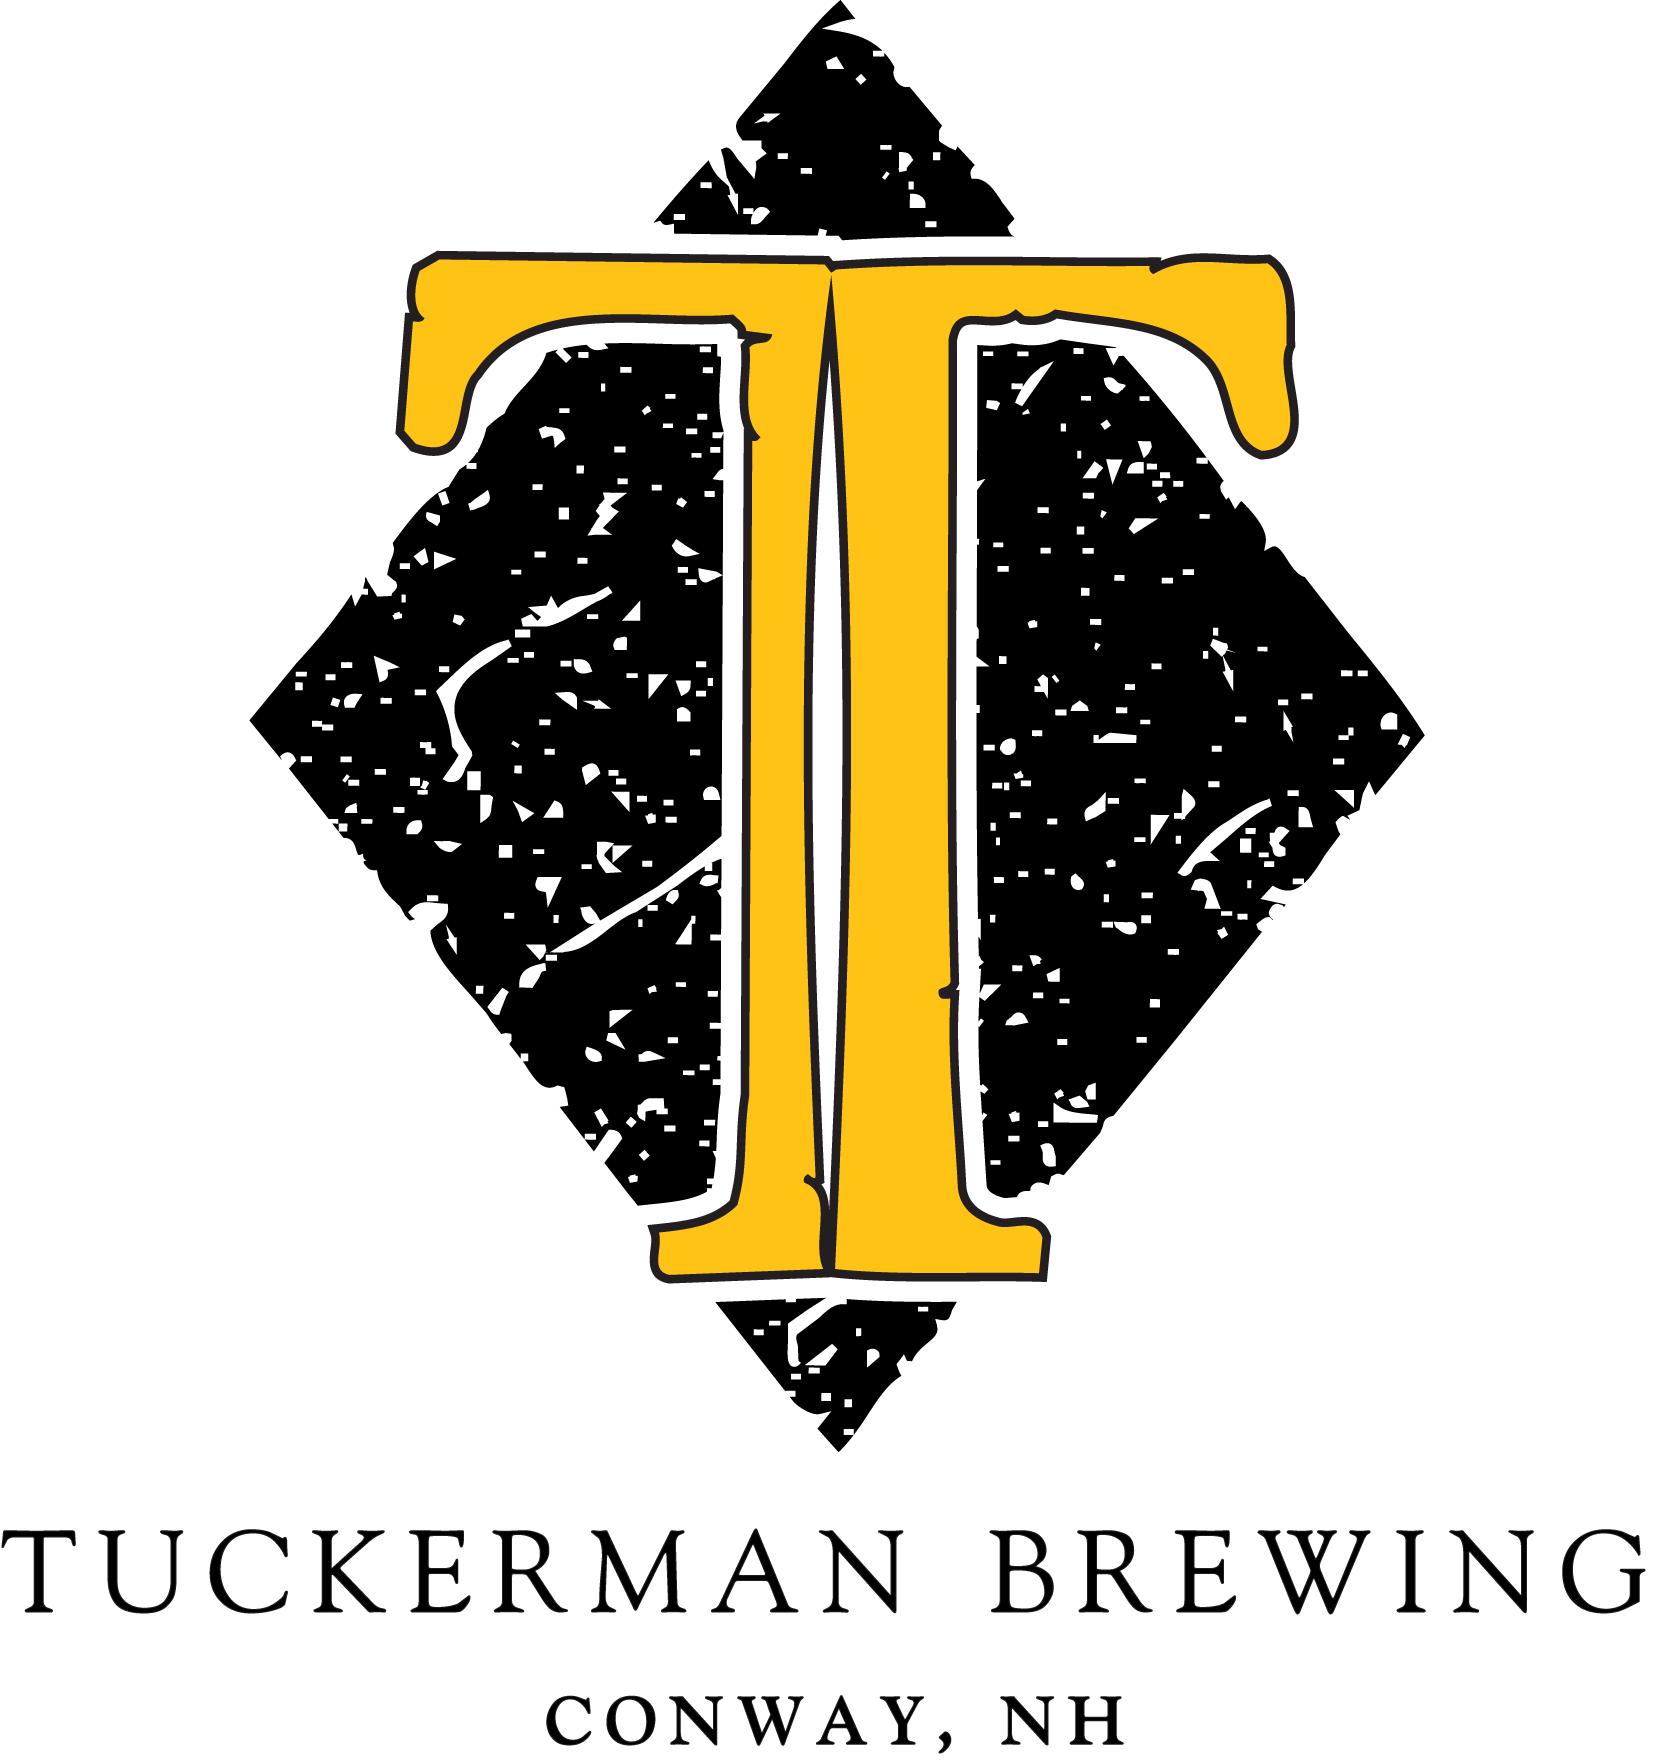 Tuckerman Brewing Co